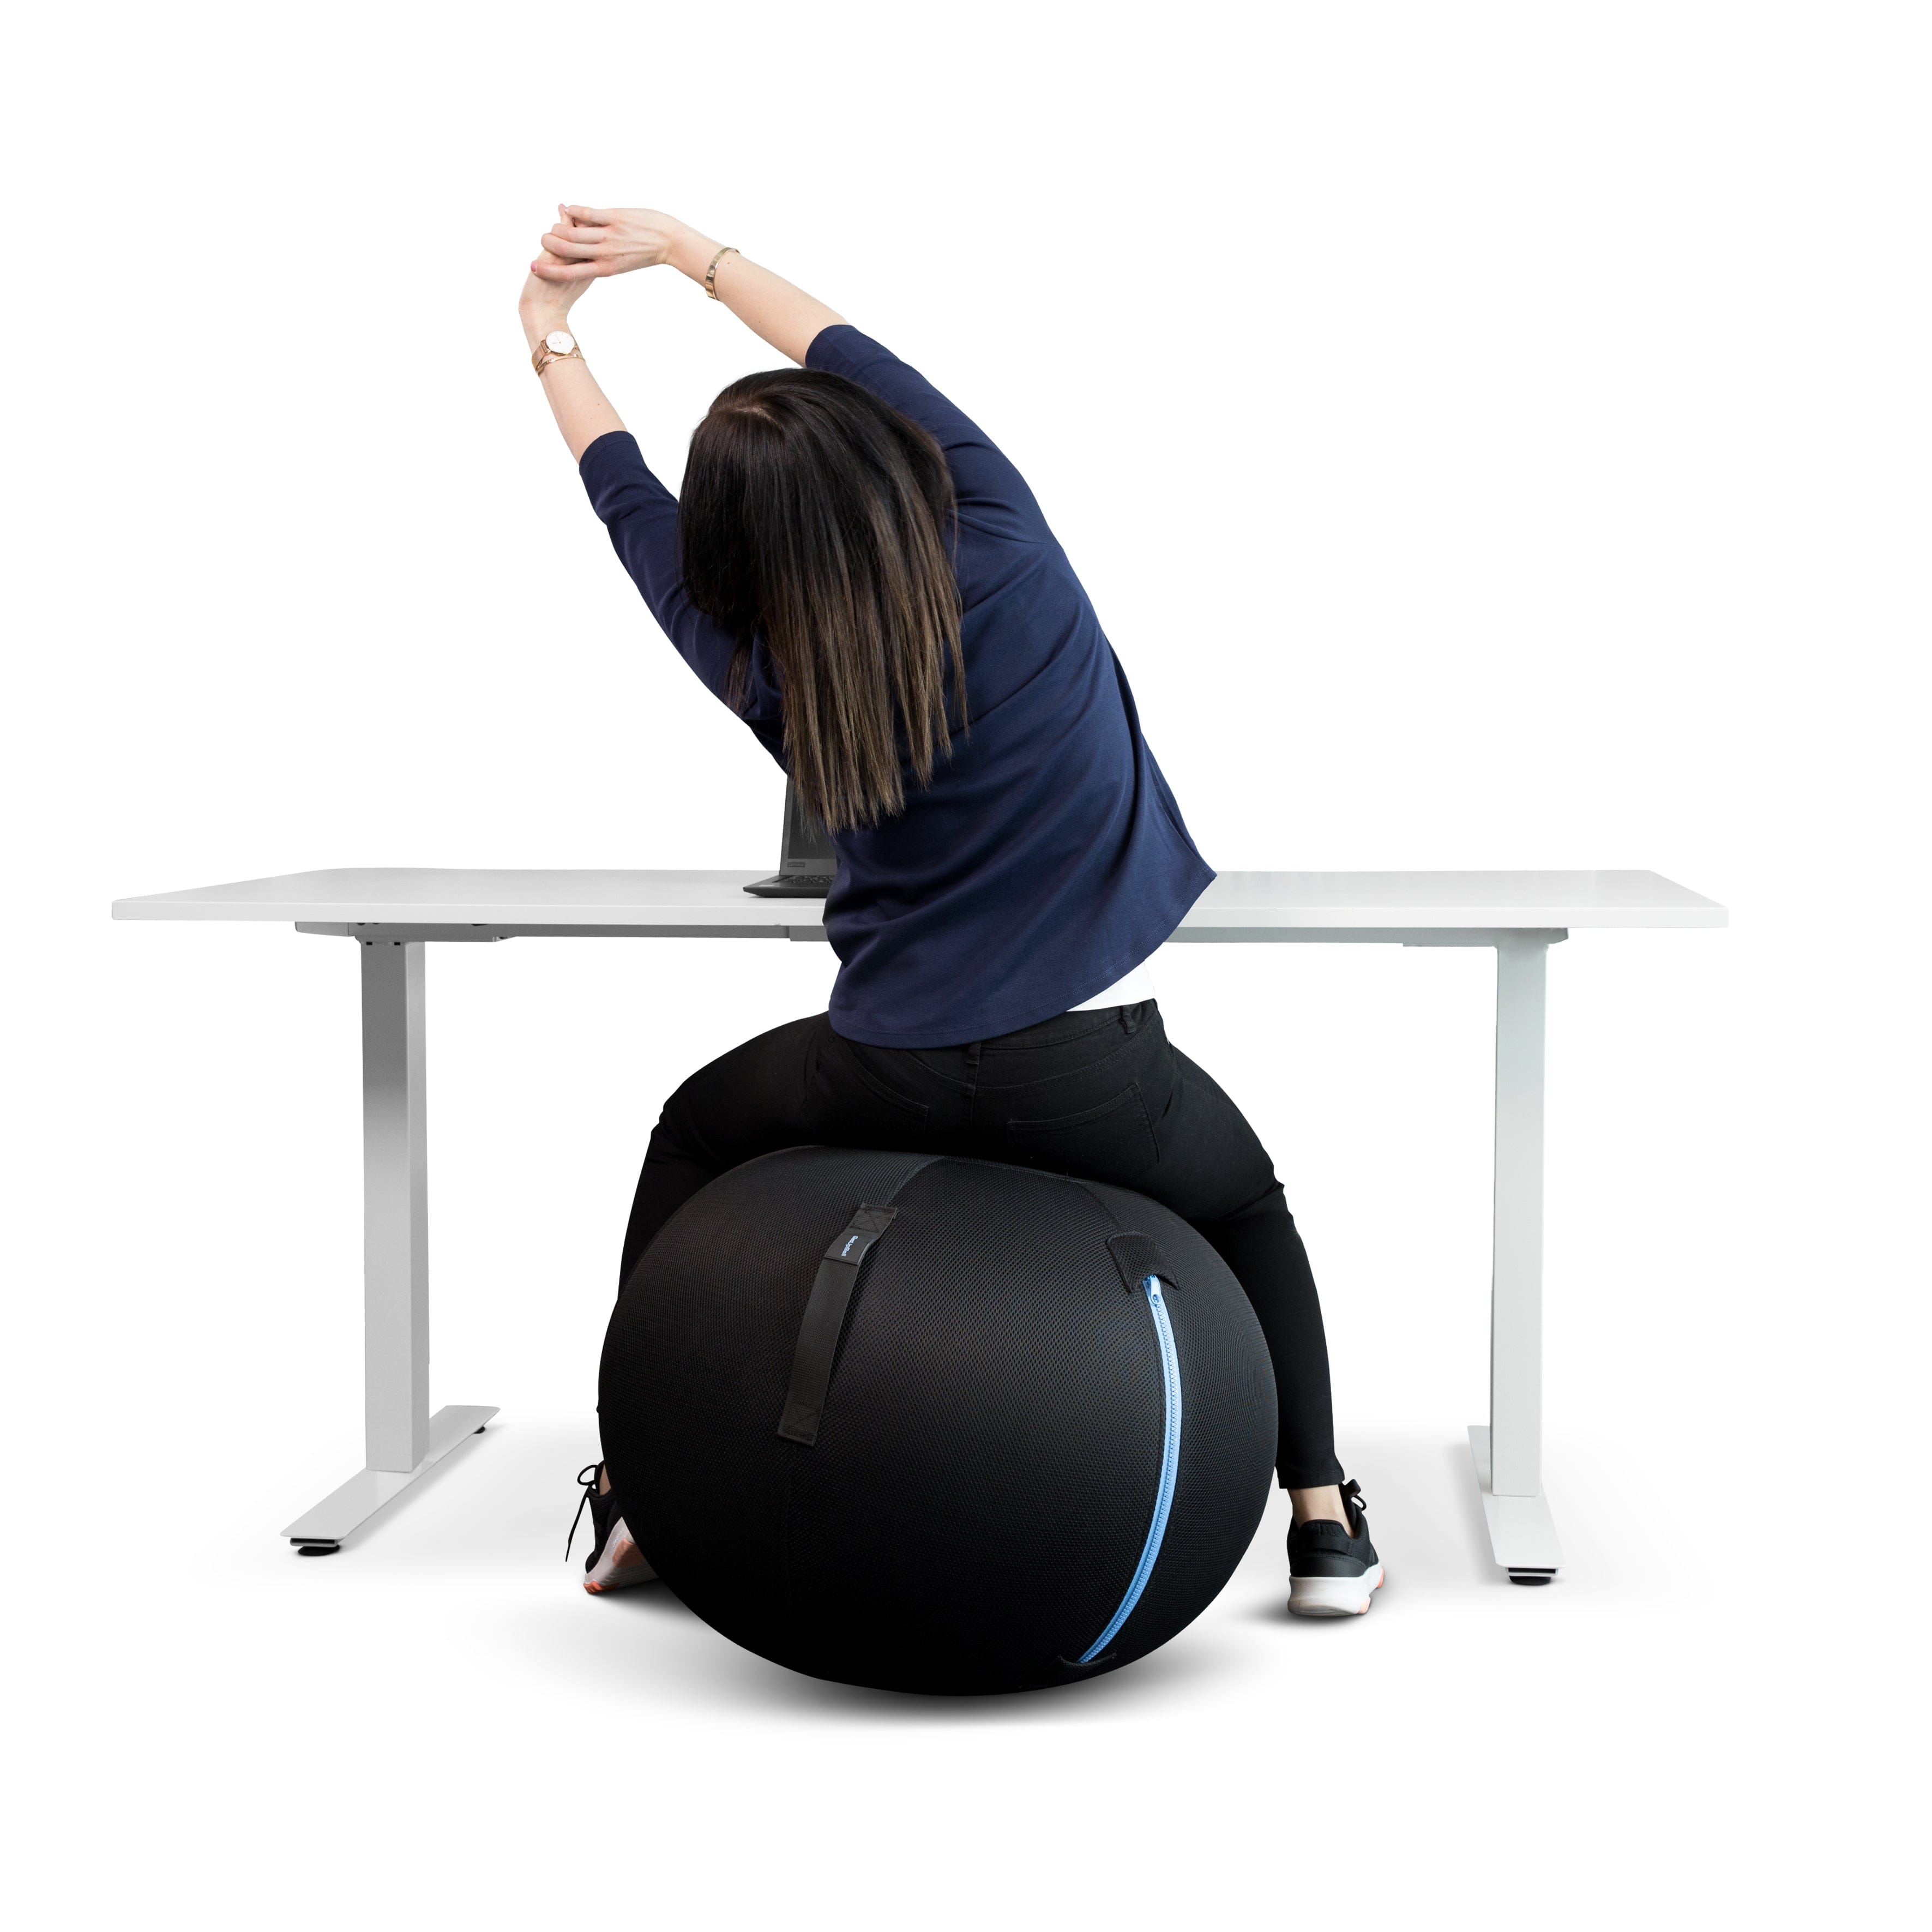  GetUpBall (Medium) - Aktiva stolar och sitsar, koncentrationssvårigheter, ryggbesvär, skolor, Stolar, trötthet - ErgoFinland